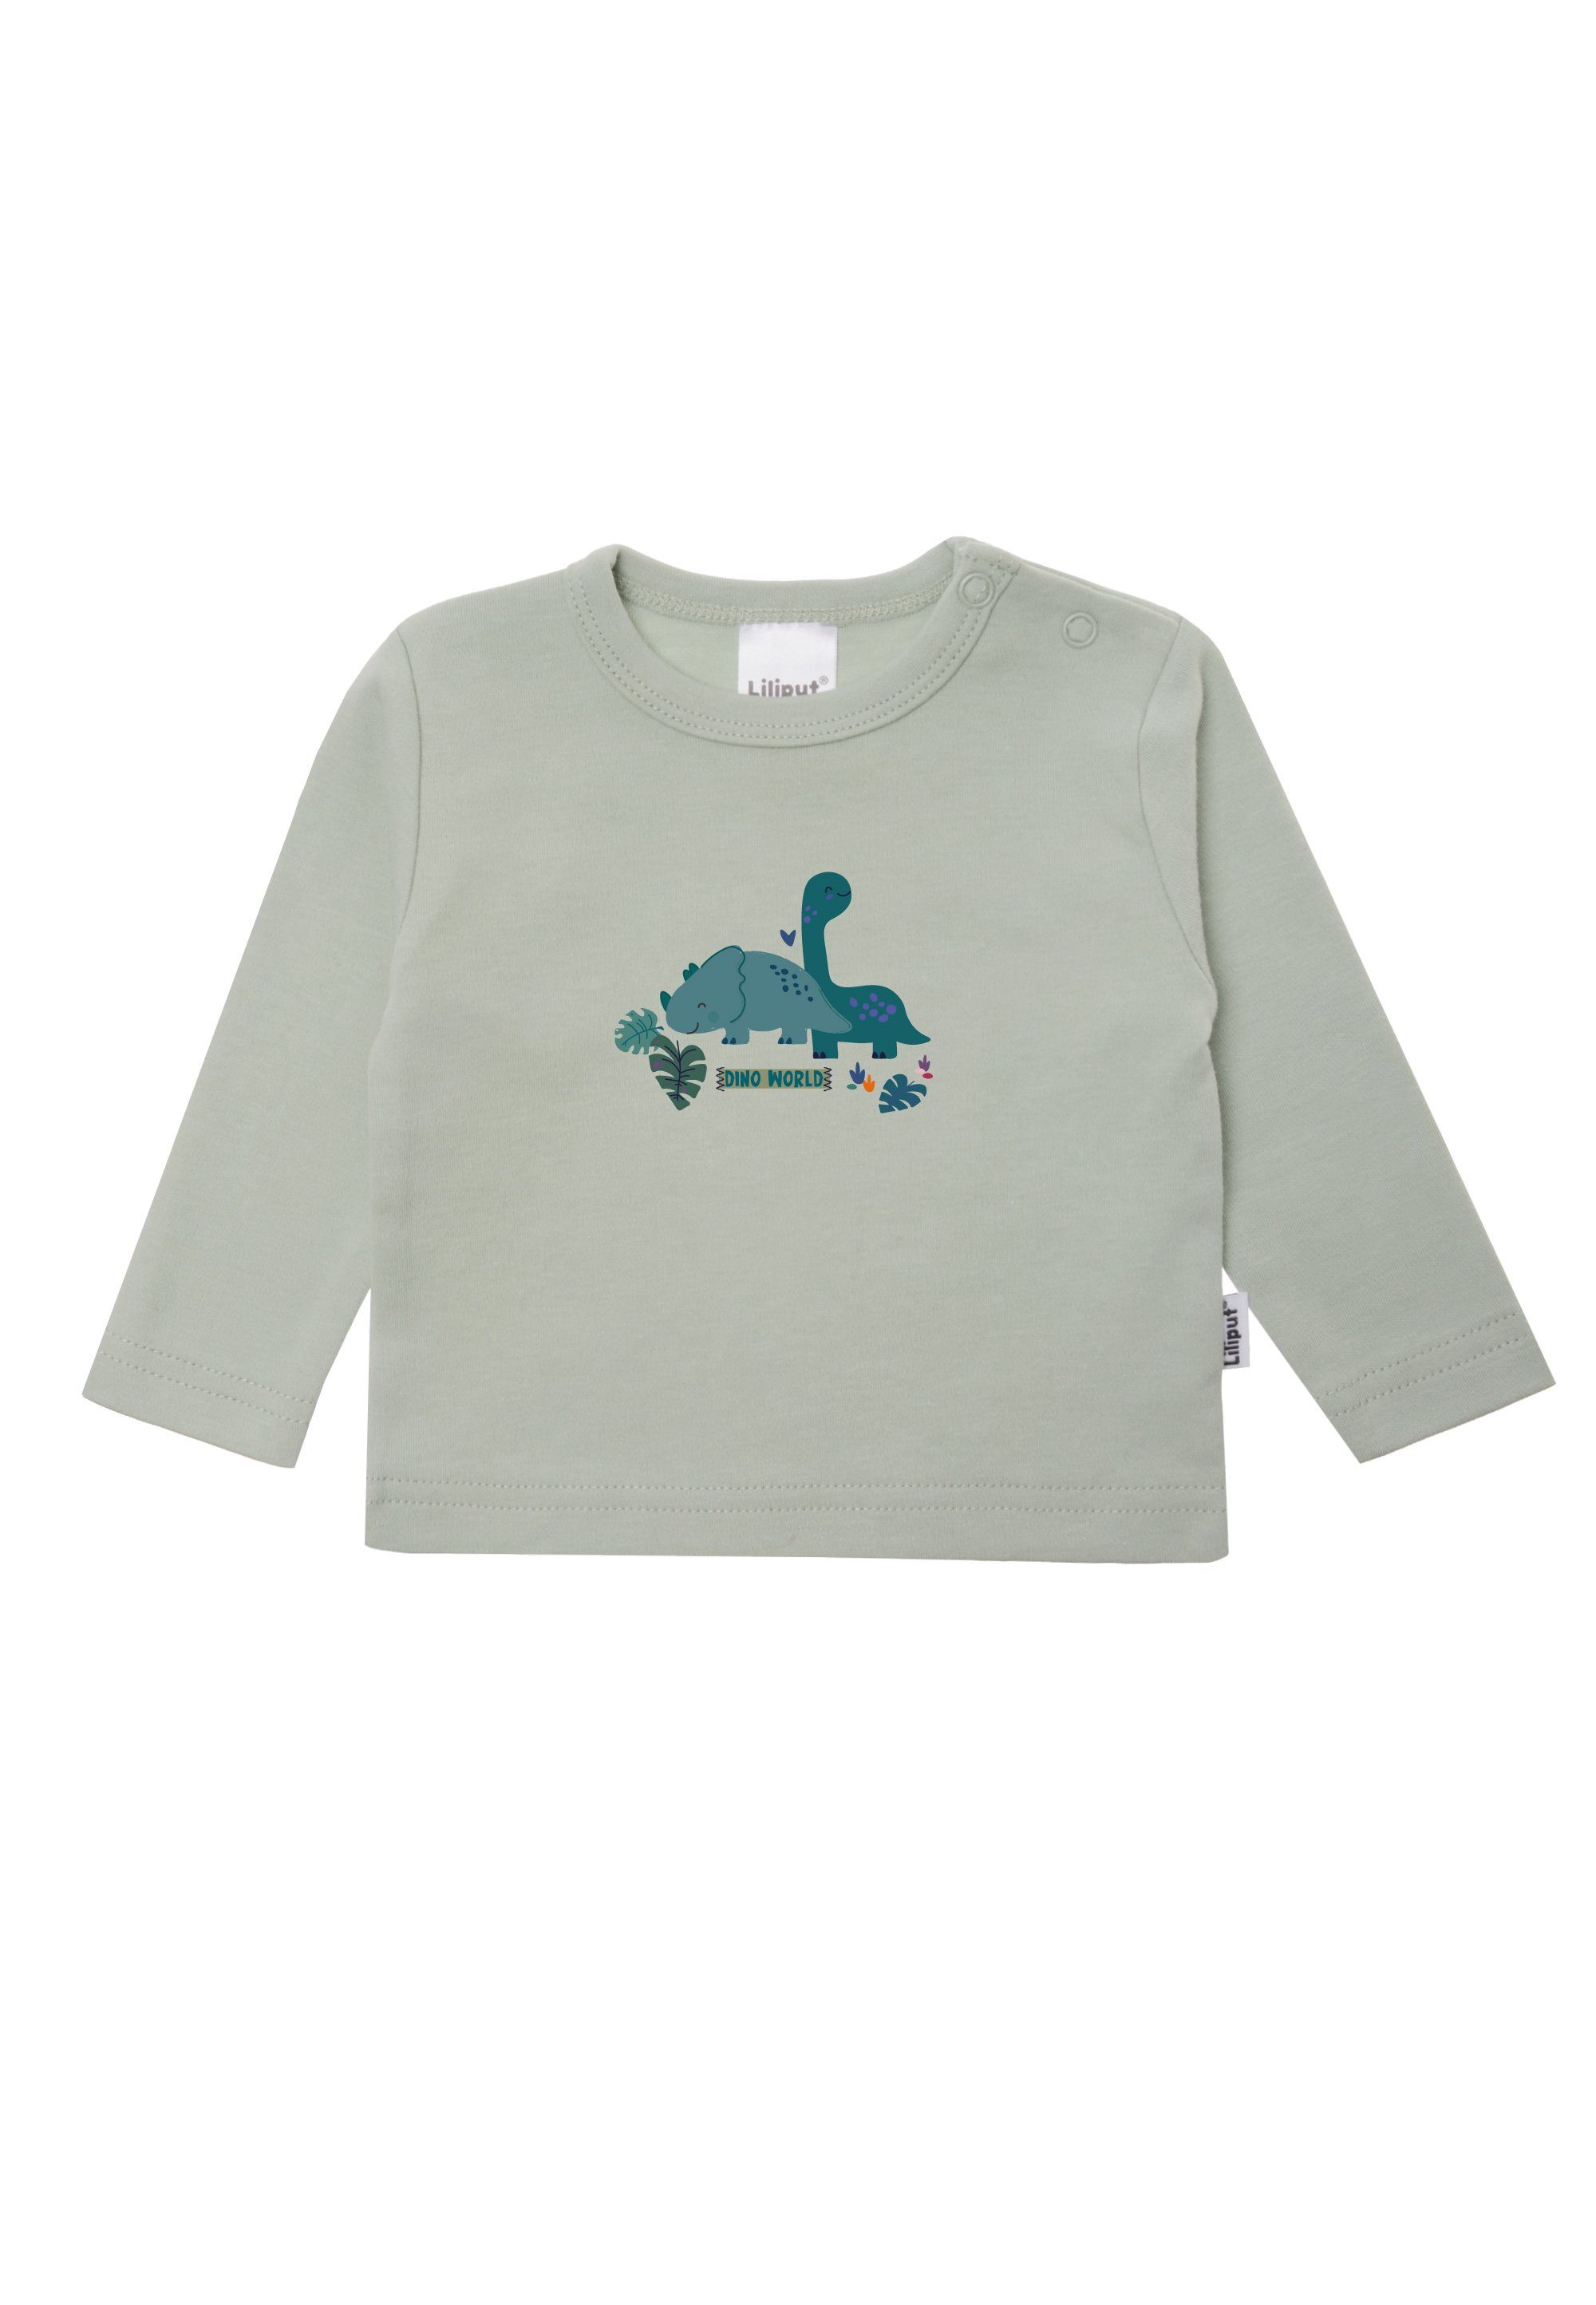 Liliput T-Shirt Dino Baumwoll-Material aus weichem